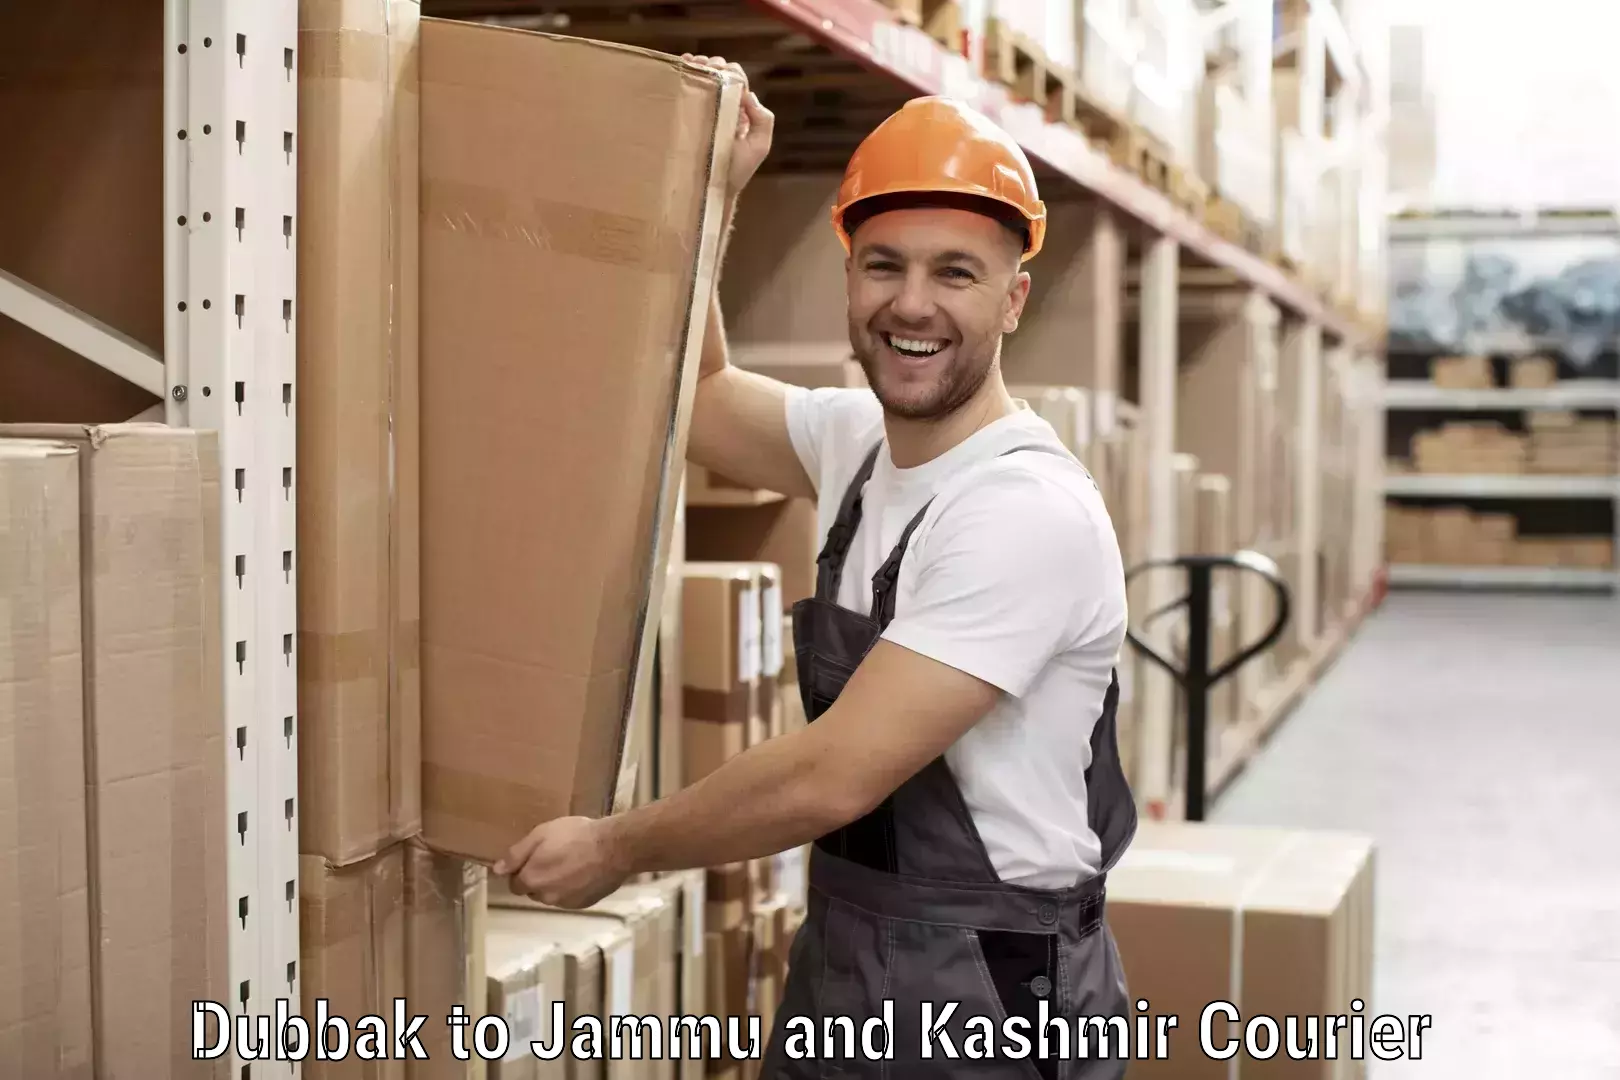 Custom shipping services Dubbak to Srinagar Kashmir